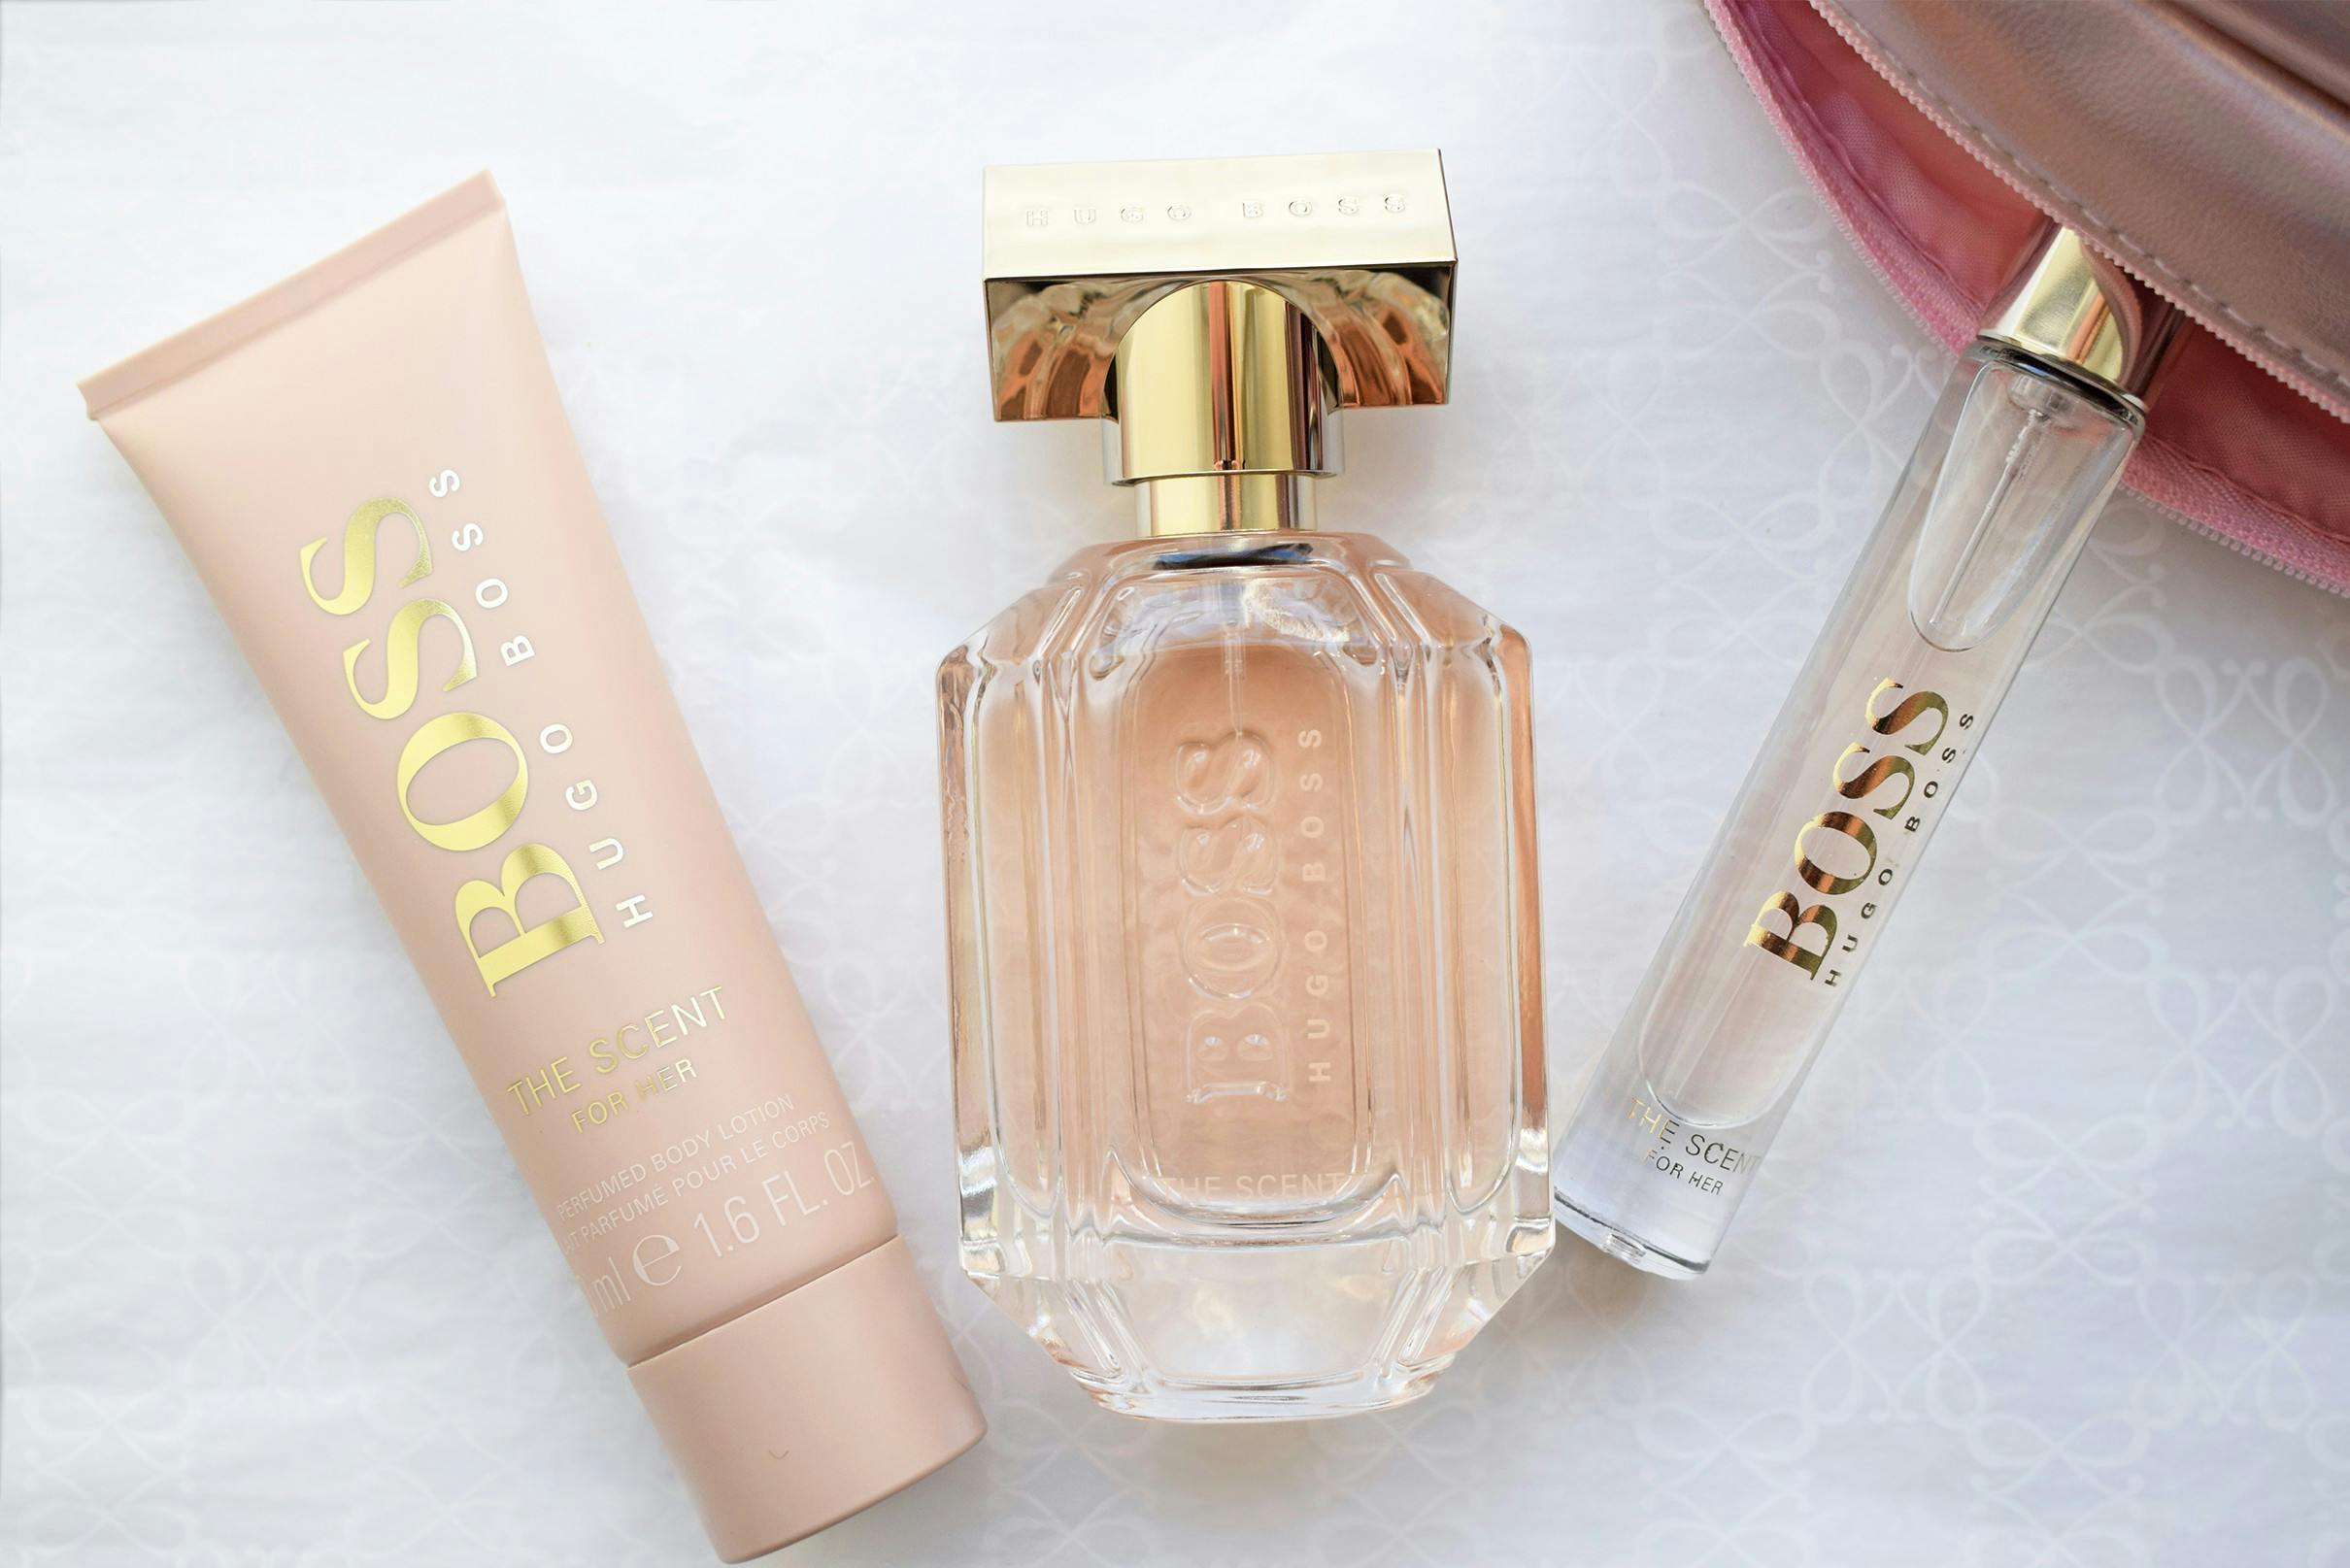 Den søde, lette og meget populære parfume - Hugo Boss the for her